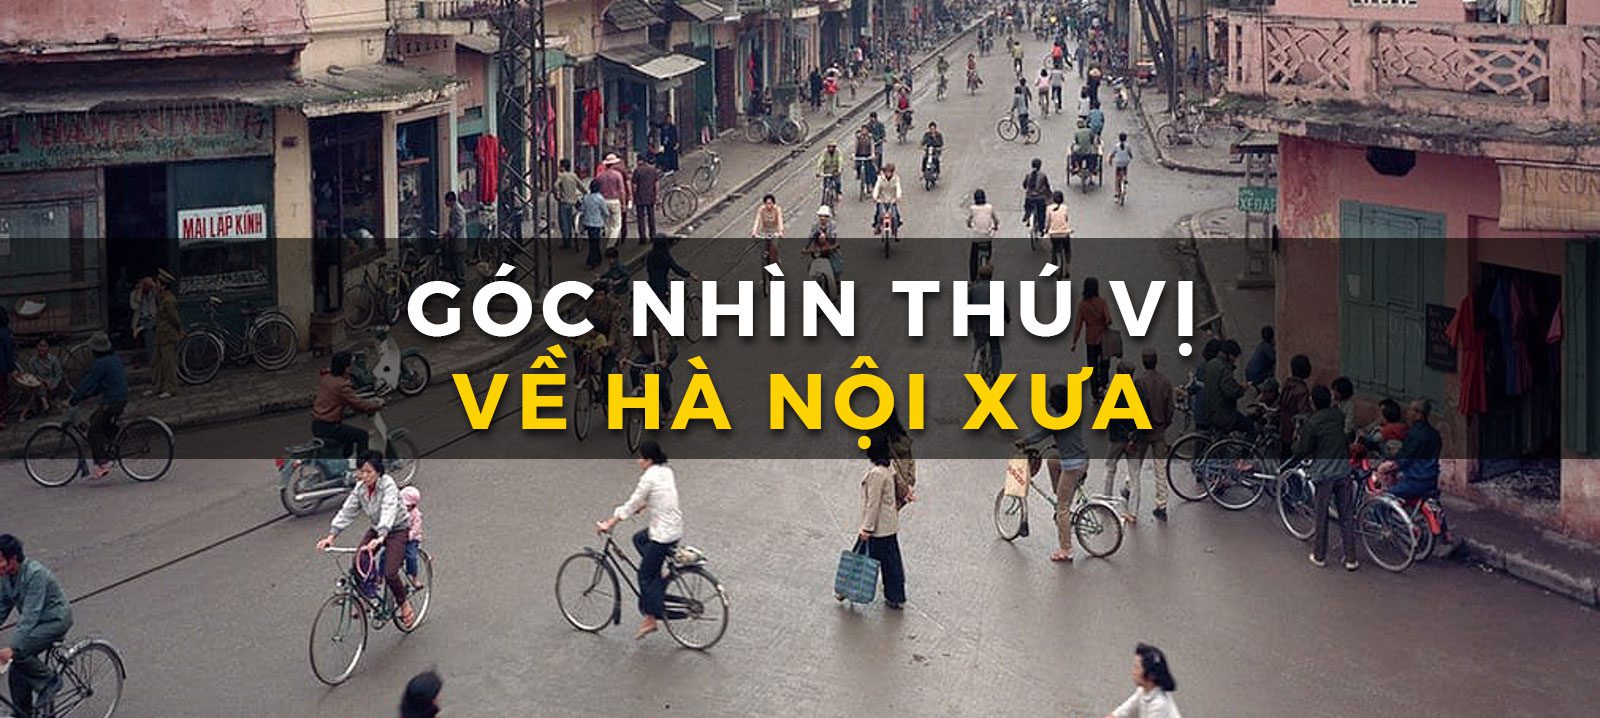 Những bức ảnh đẹp về Hà Nội xưa – Học viện nhiếp ảnh Quảng Cáo ...